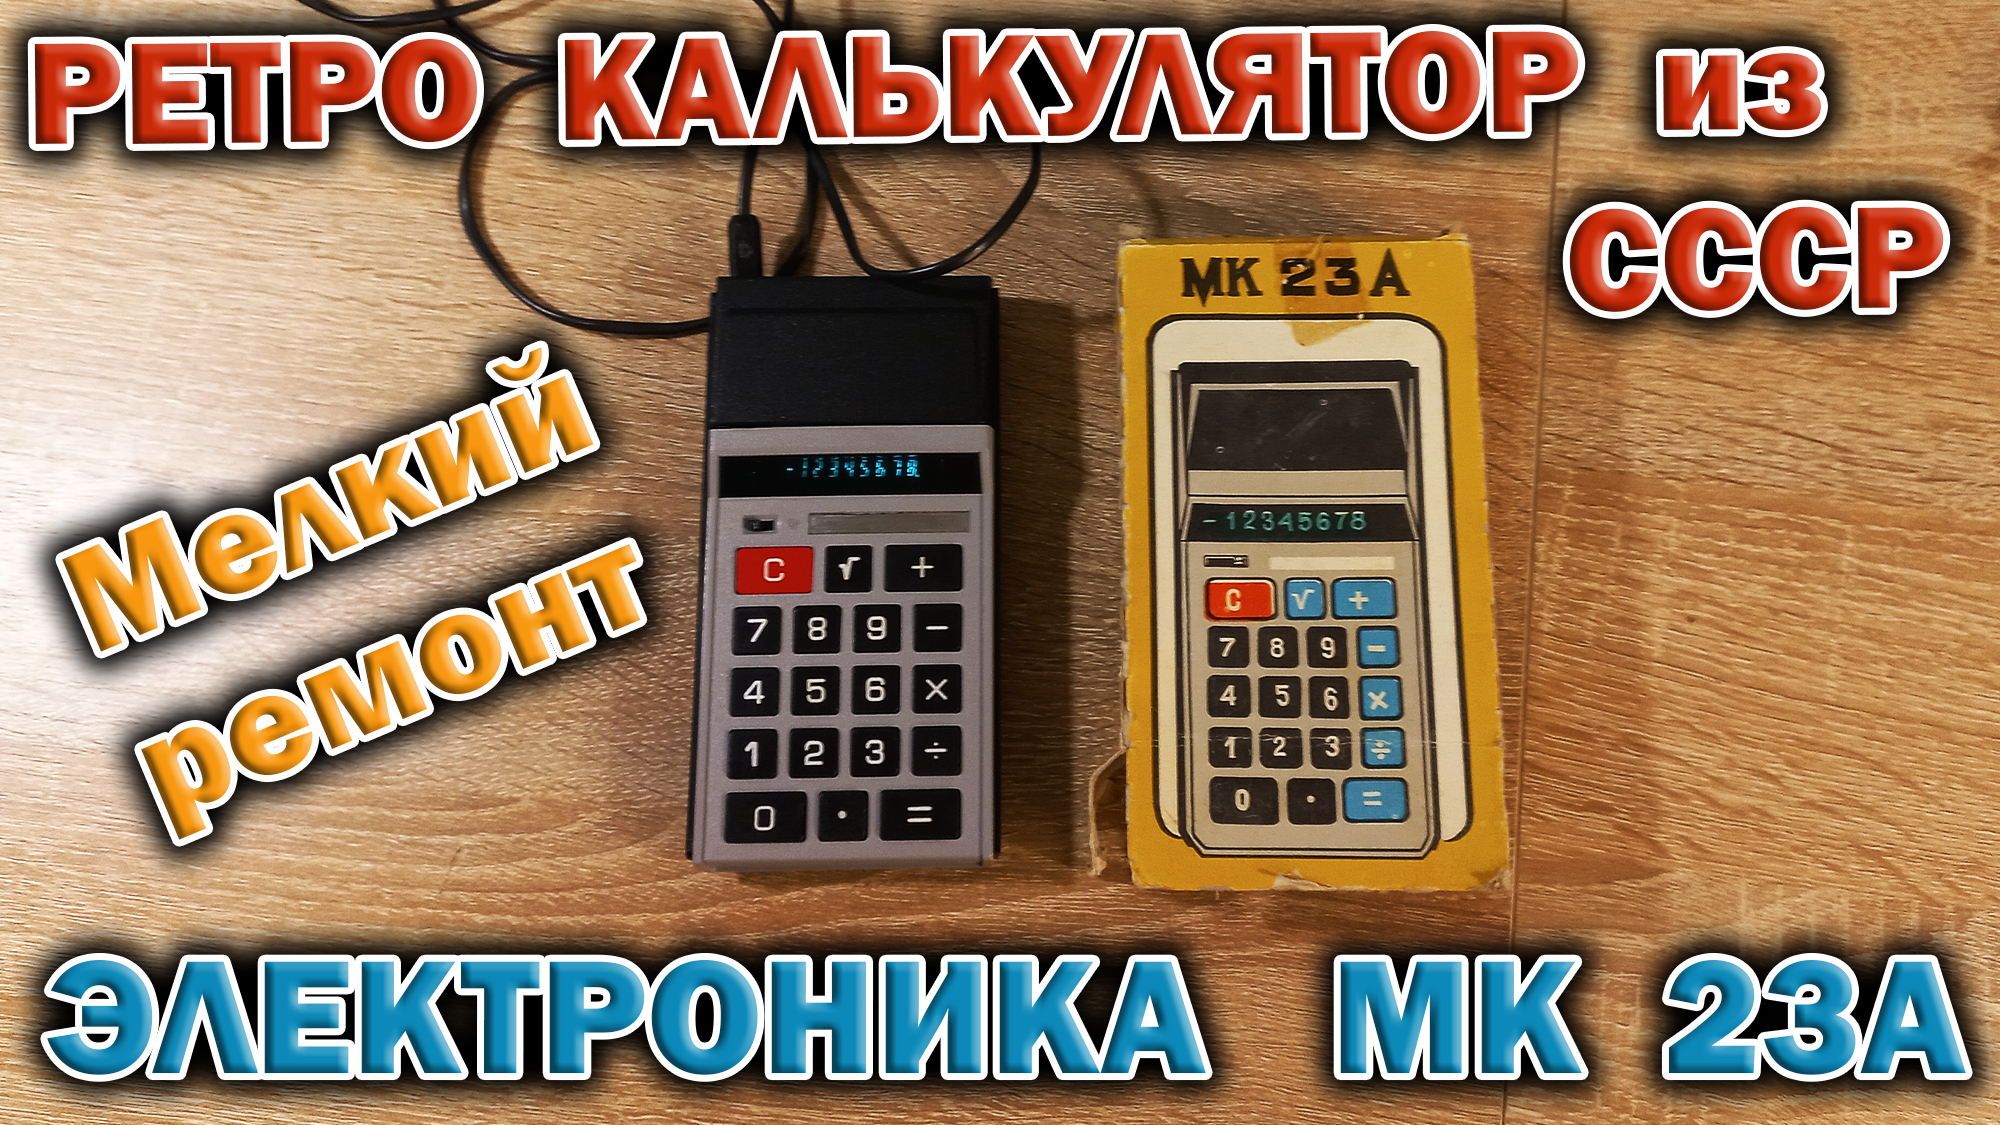 Микрокалькулятор из СССР 1989 года - Электроника МК 23А. Небольшой ремонт и обзор устройства.